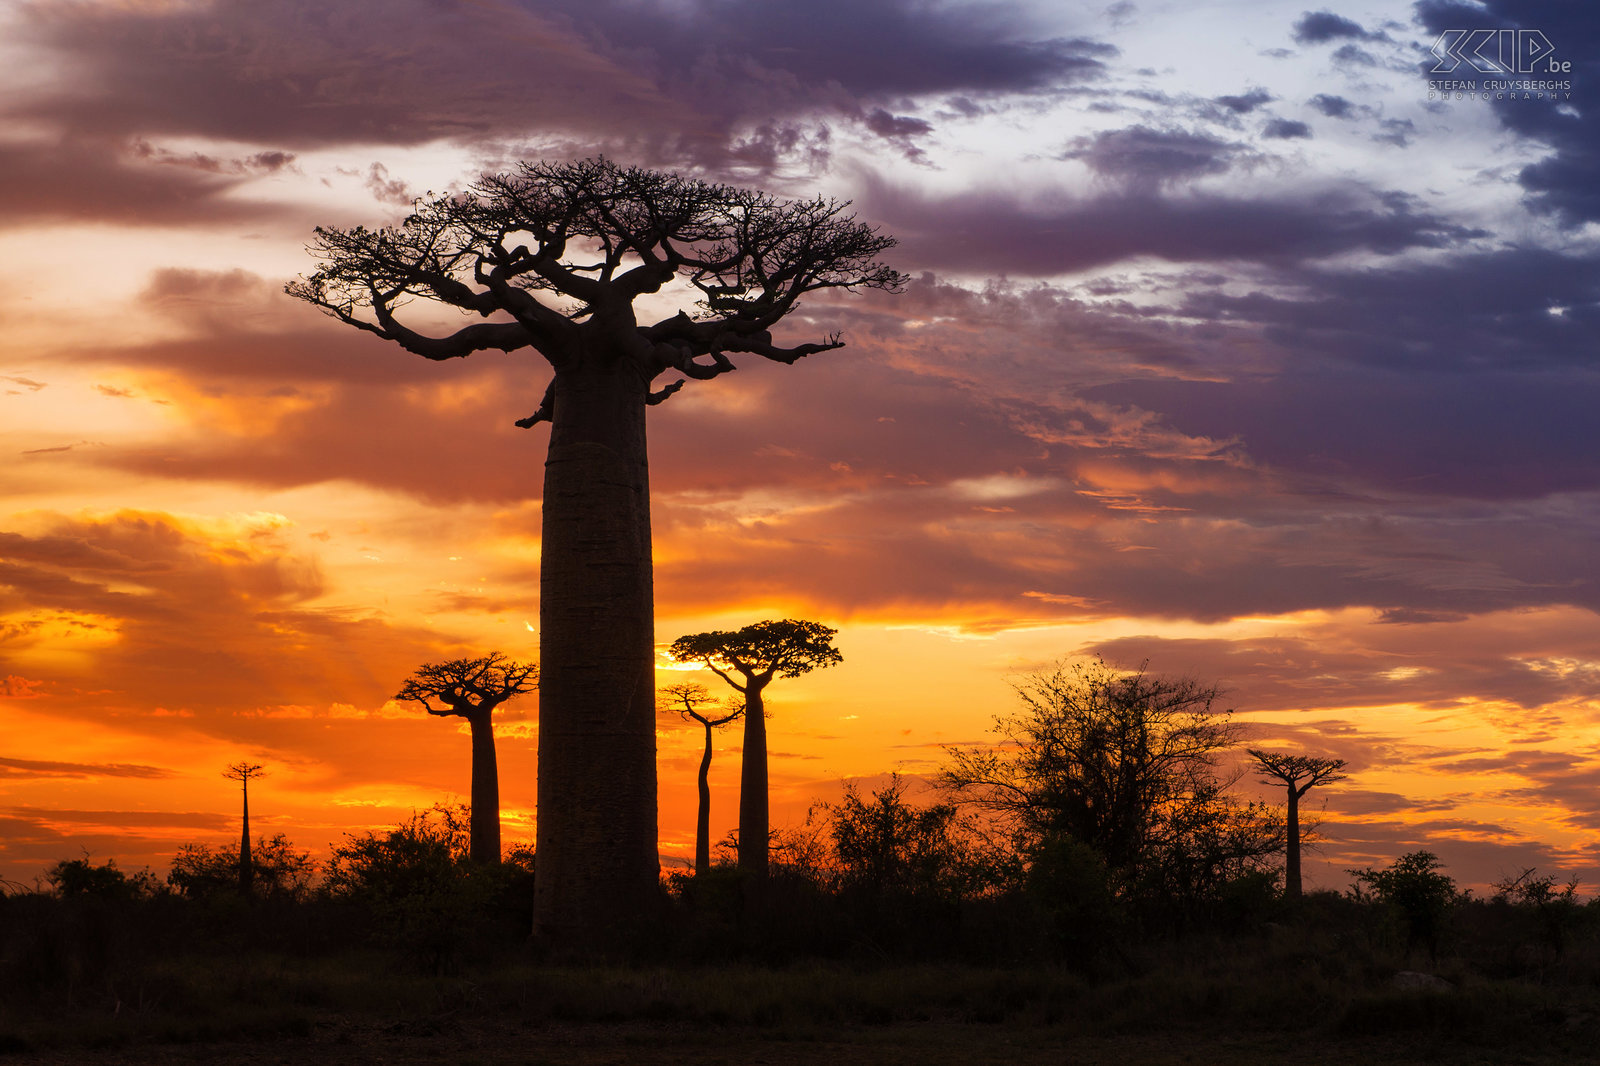 Zonsopgang aan de baobabs In het gebied tussen Morondava en Belon'i Tsiribihina in het westen van Madagaskar staan honderden indrukwekkende baobabs. We gingen er heel vroeg naartoe om de zonsopgang aan deze indrukwekkende bomen te fotograferen. Stefan Cruysberghs